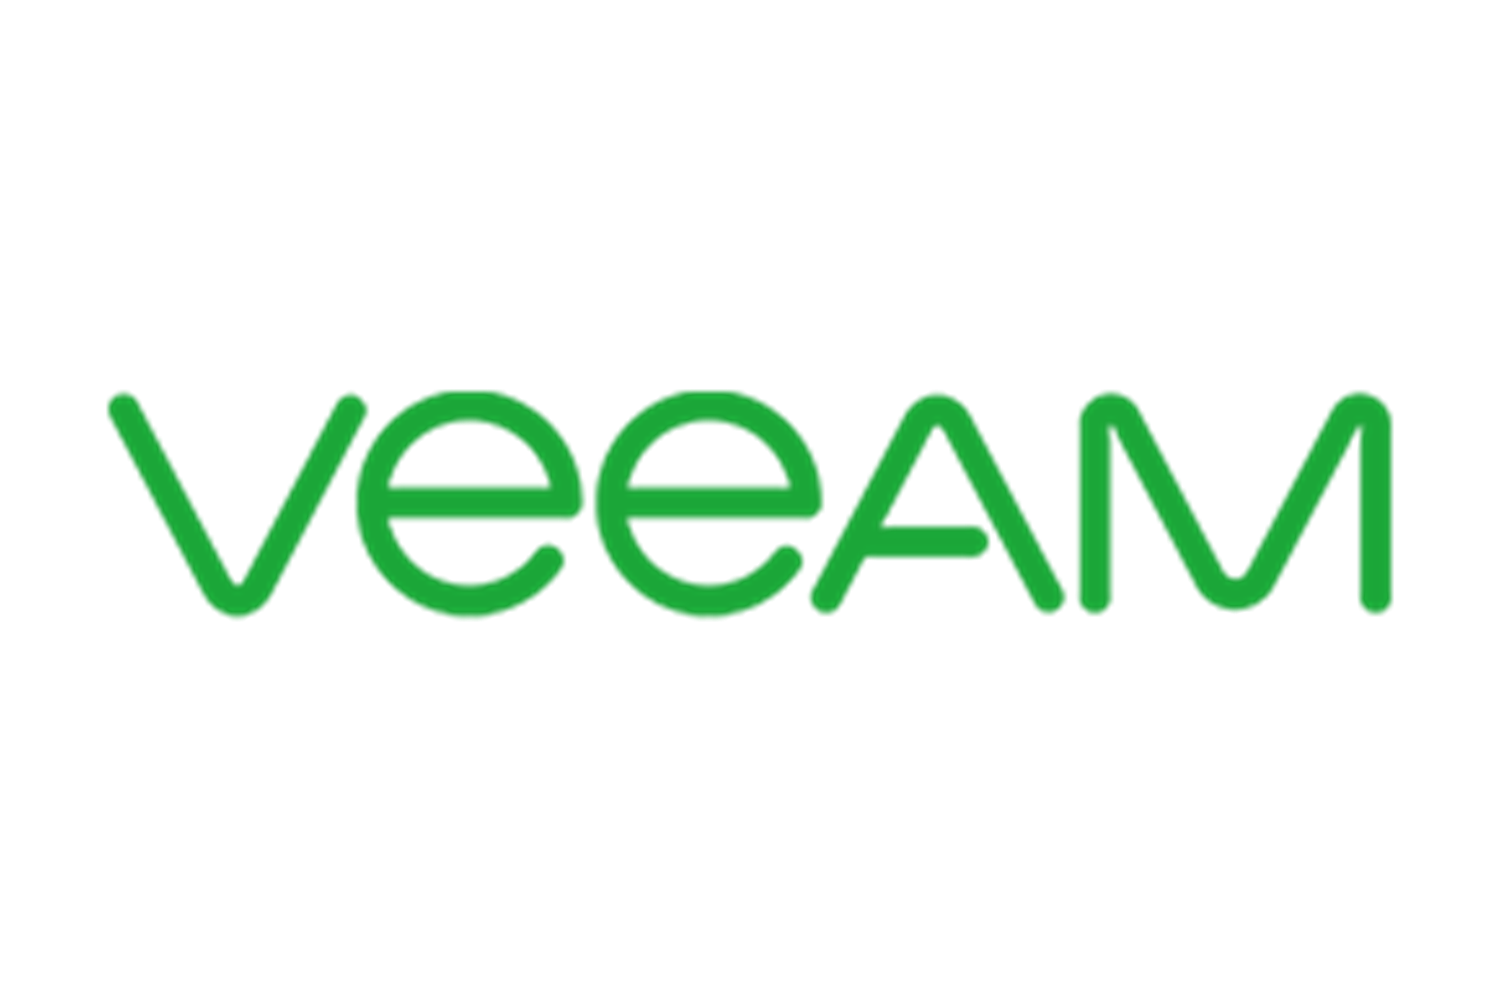 avant-Veeam-logo_1.png